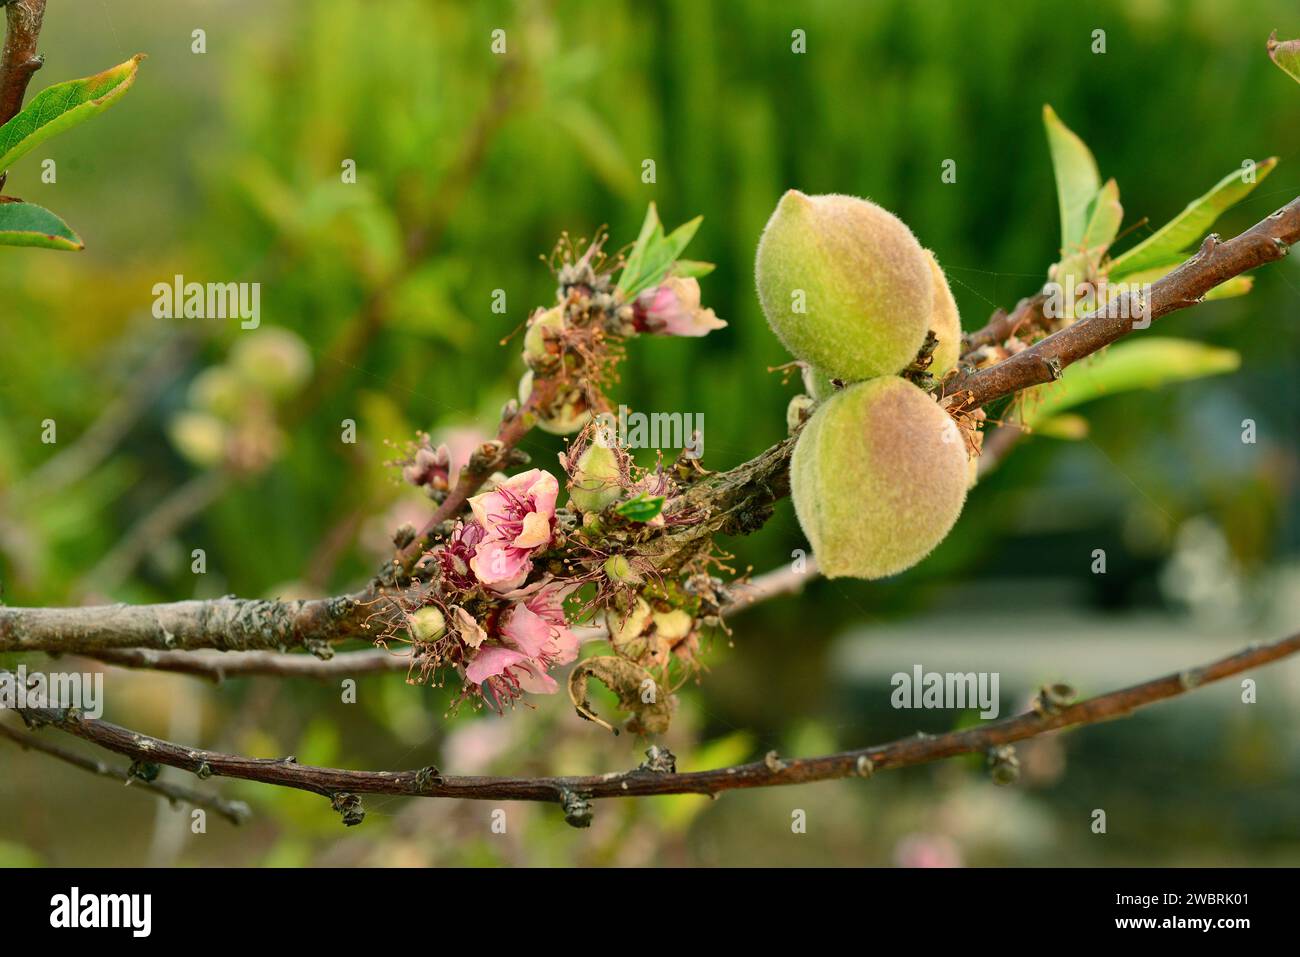 Aprikosenbaum (Prunus armeniaca) ist ein Laubbaum, der in Asien von Armenien bis China beheimatet ist. Es wird wegen seiner essbaren Früchte (Drupes) häufig angebaut. Flowe Stockfoto